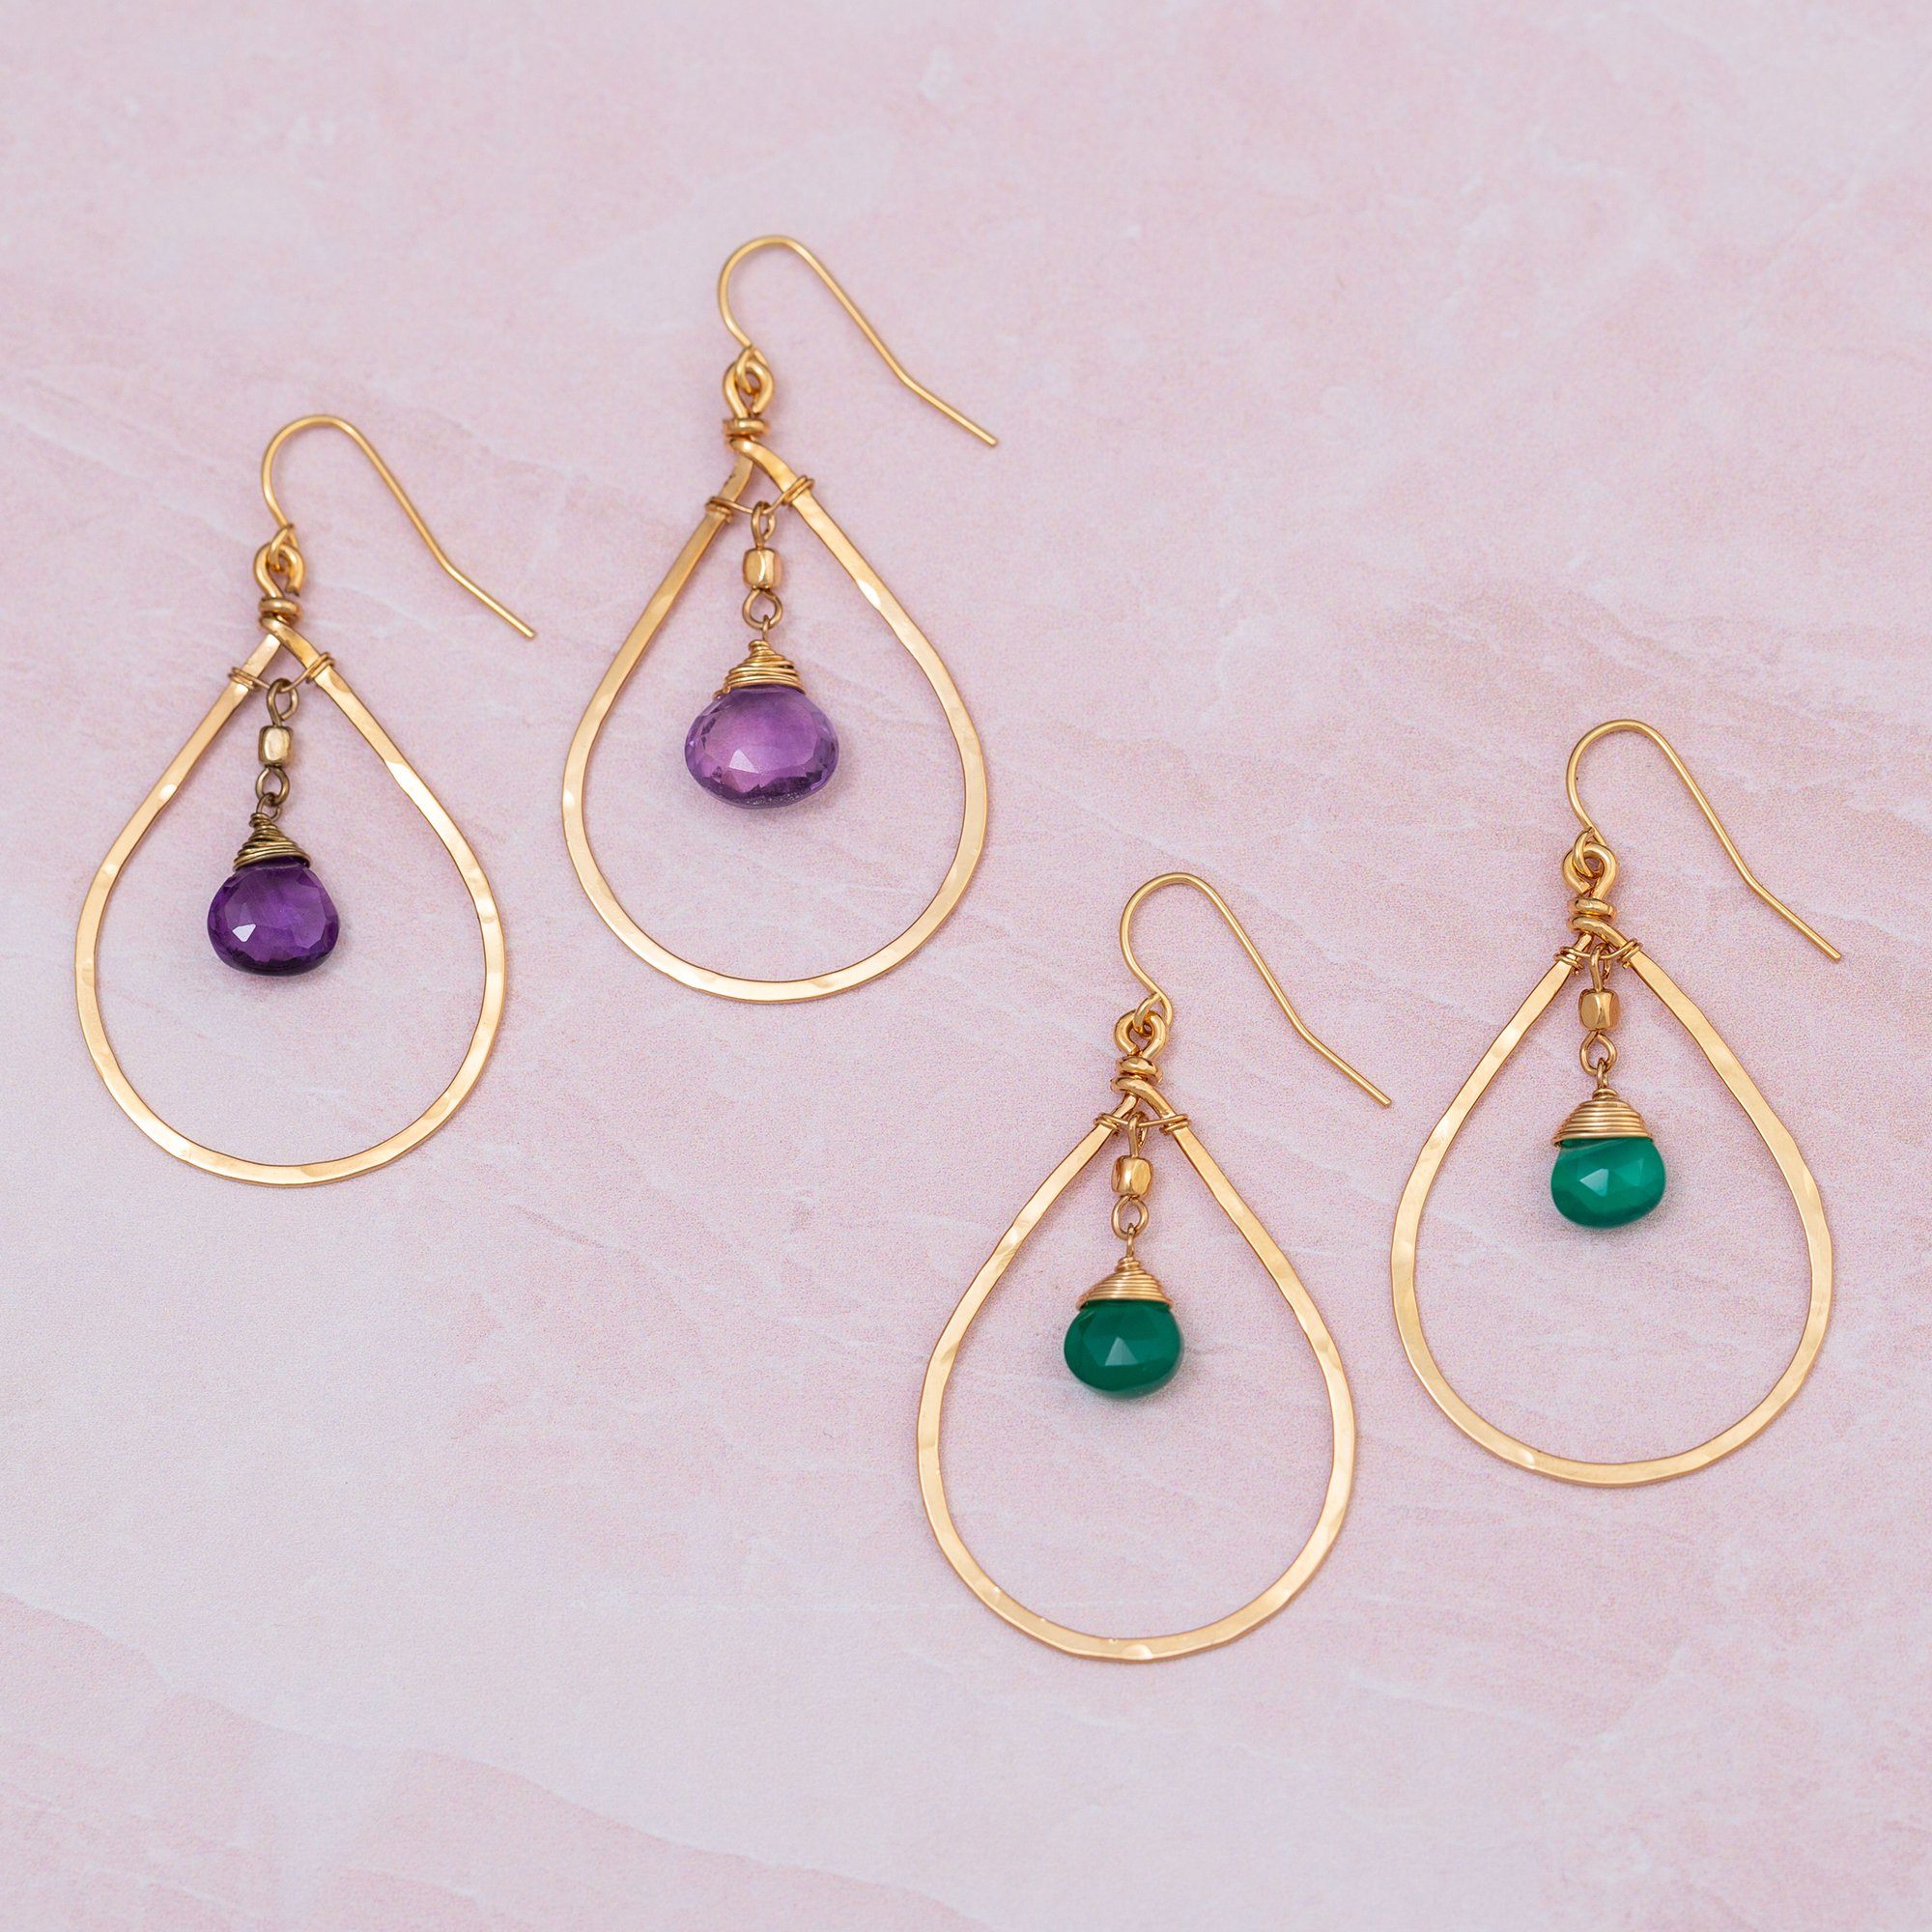 Gemstone Hoop Gold-Filled Earrings - Amethyst